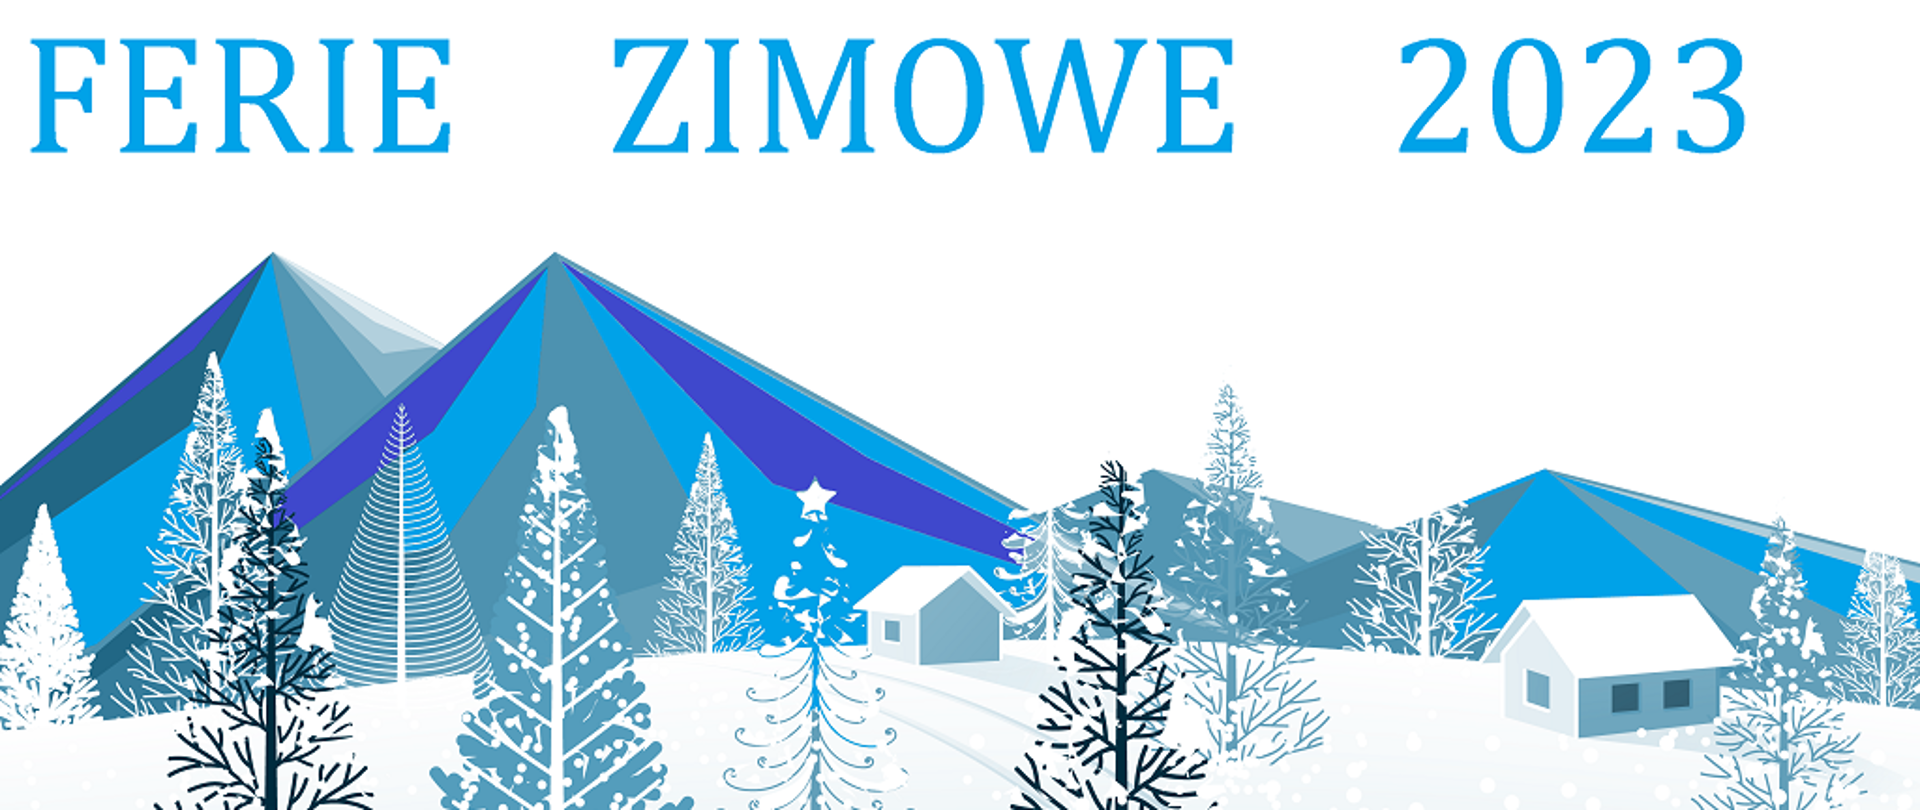 Grafika w odcieniach czerni, szarości oraz błękitu przedstawiająca choinki oraz domy na tle gór, duży niebieski napis ferie zimowe 2023